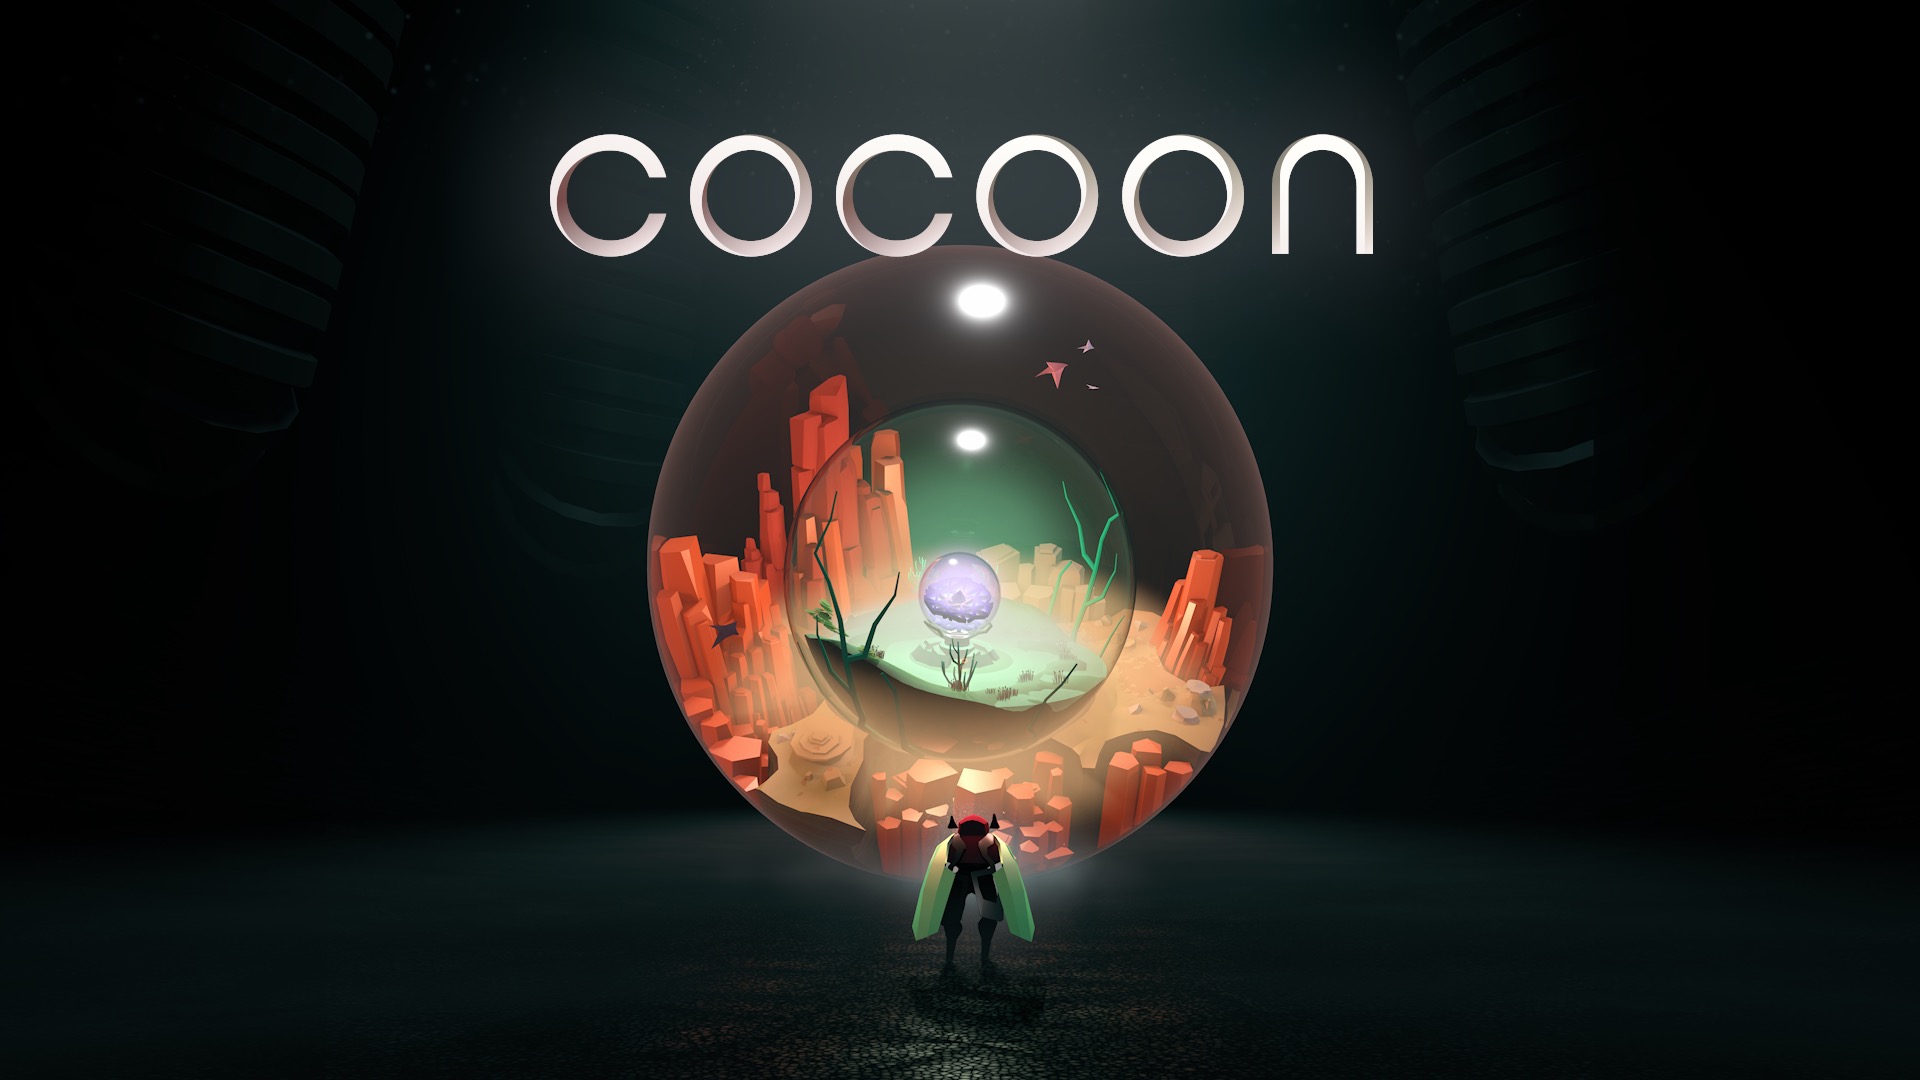 Cocoon называют одной из лучших игр Summer Game Fest, она будет в Game Pass в день релиза: с сайта NEWXBOXONE.RU